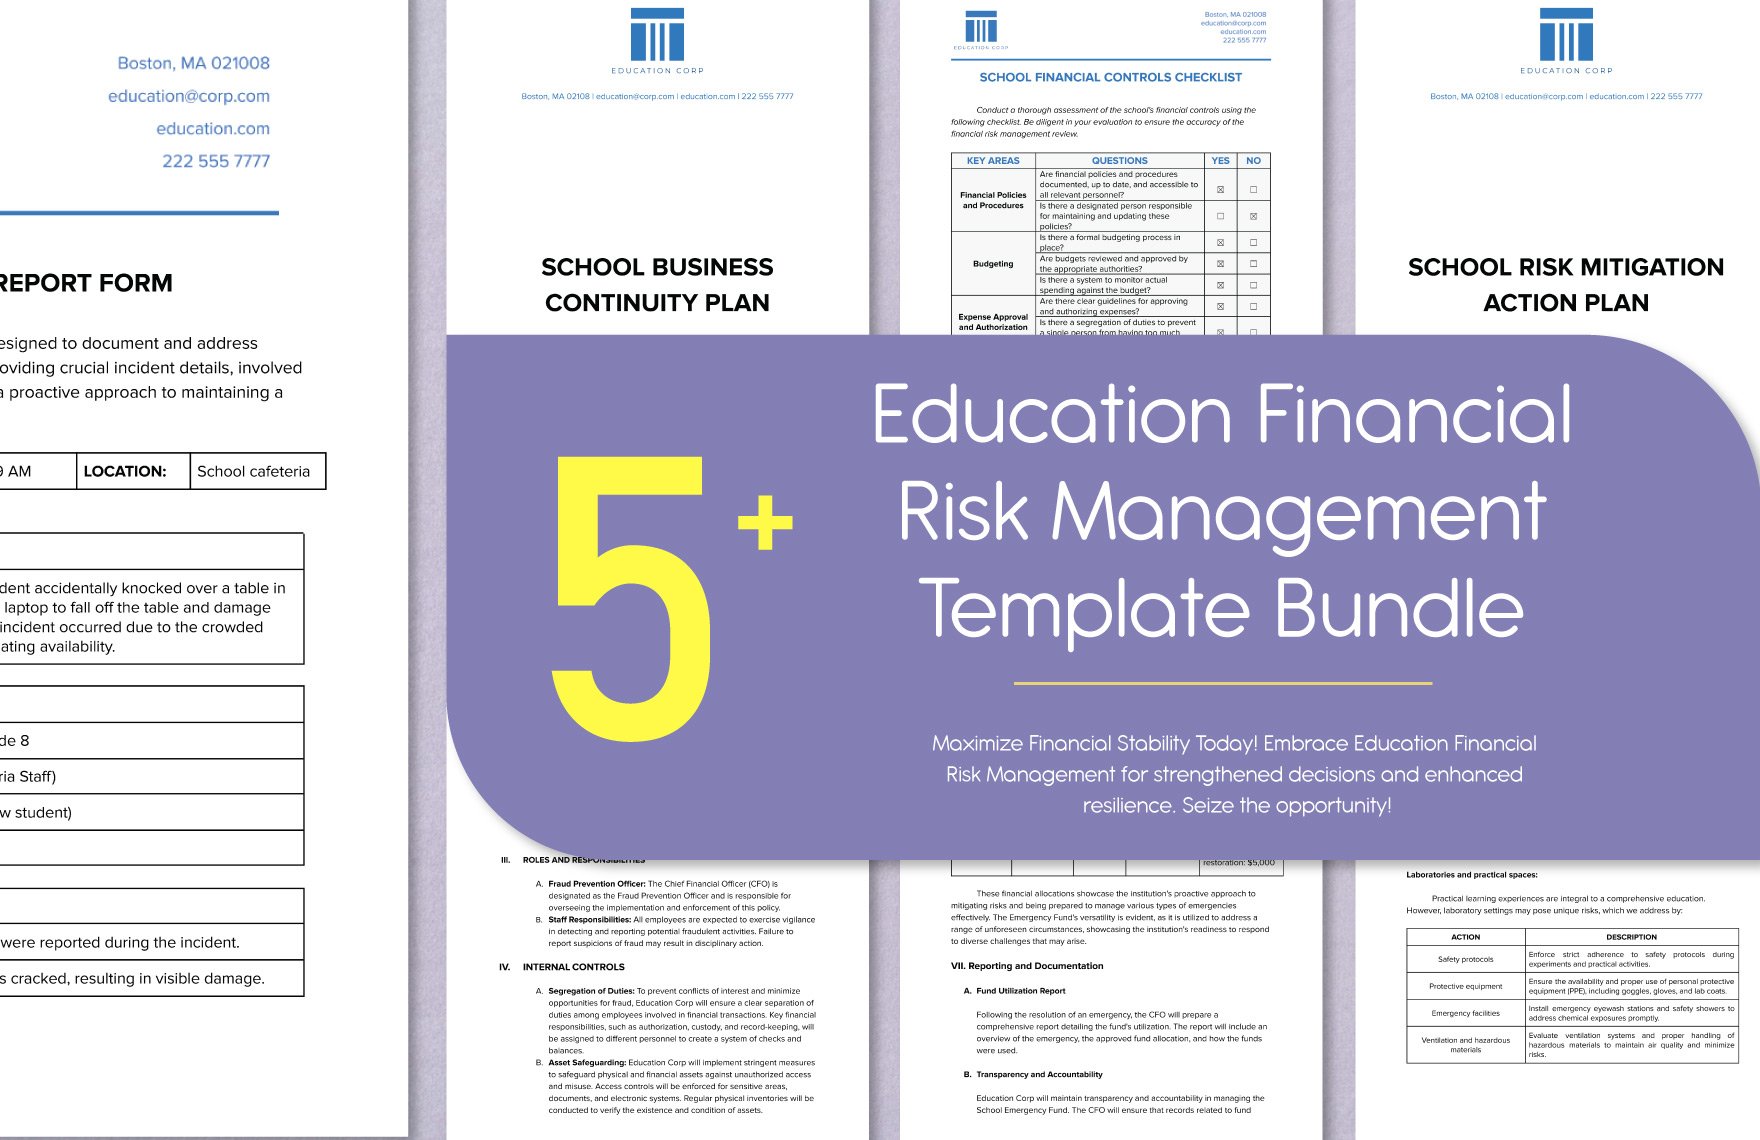 5+ Education Financial Risk Management Template Bundle